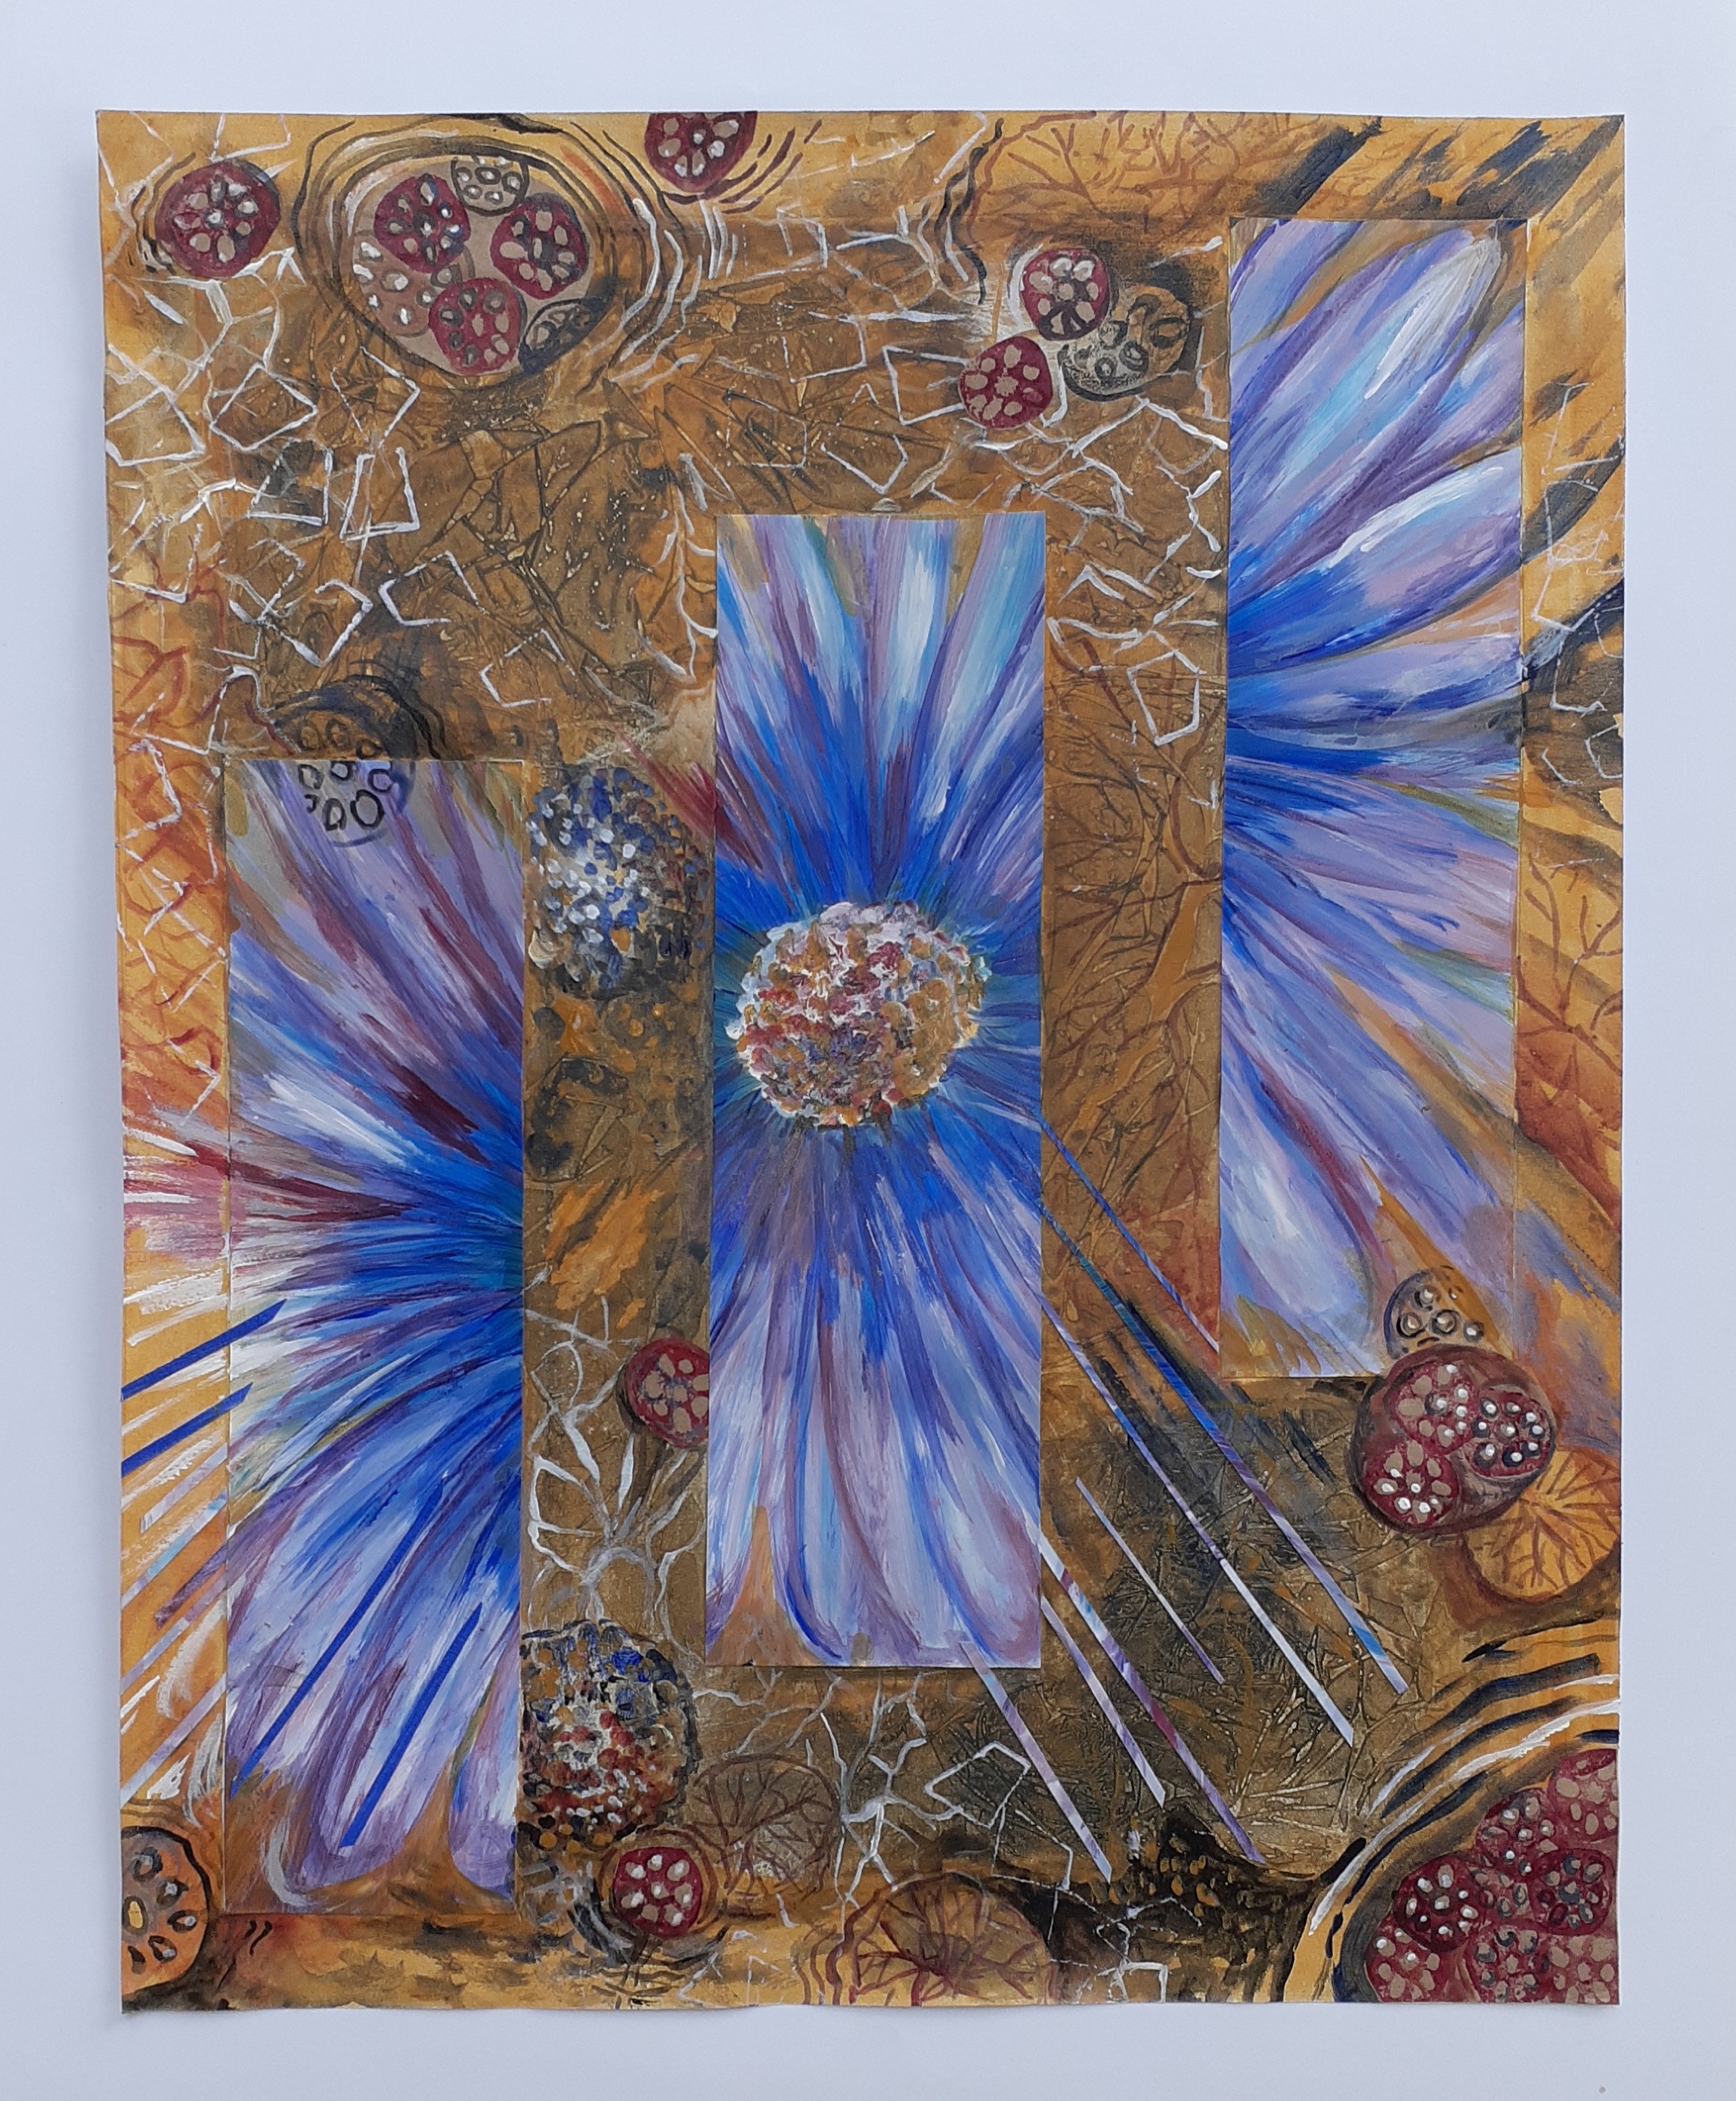 Blue lotus by Erandathie Damunupola